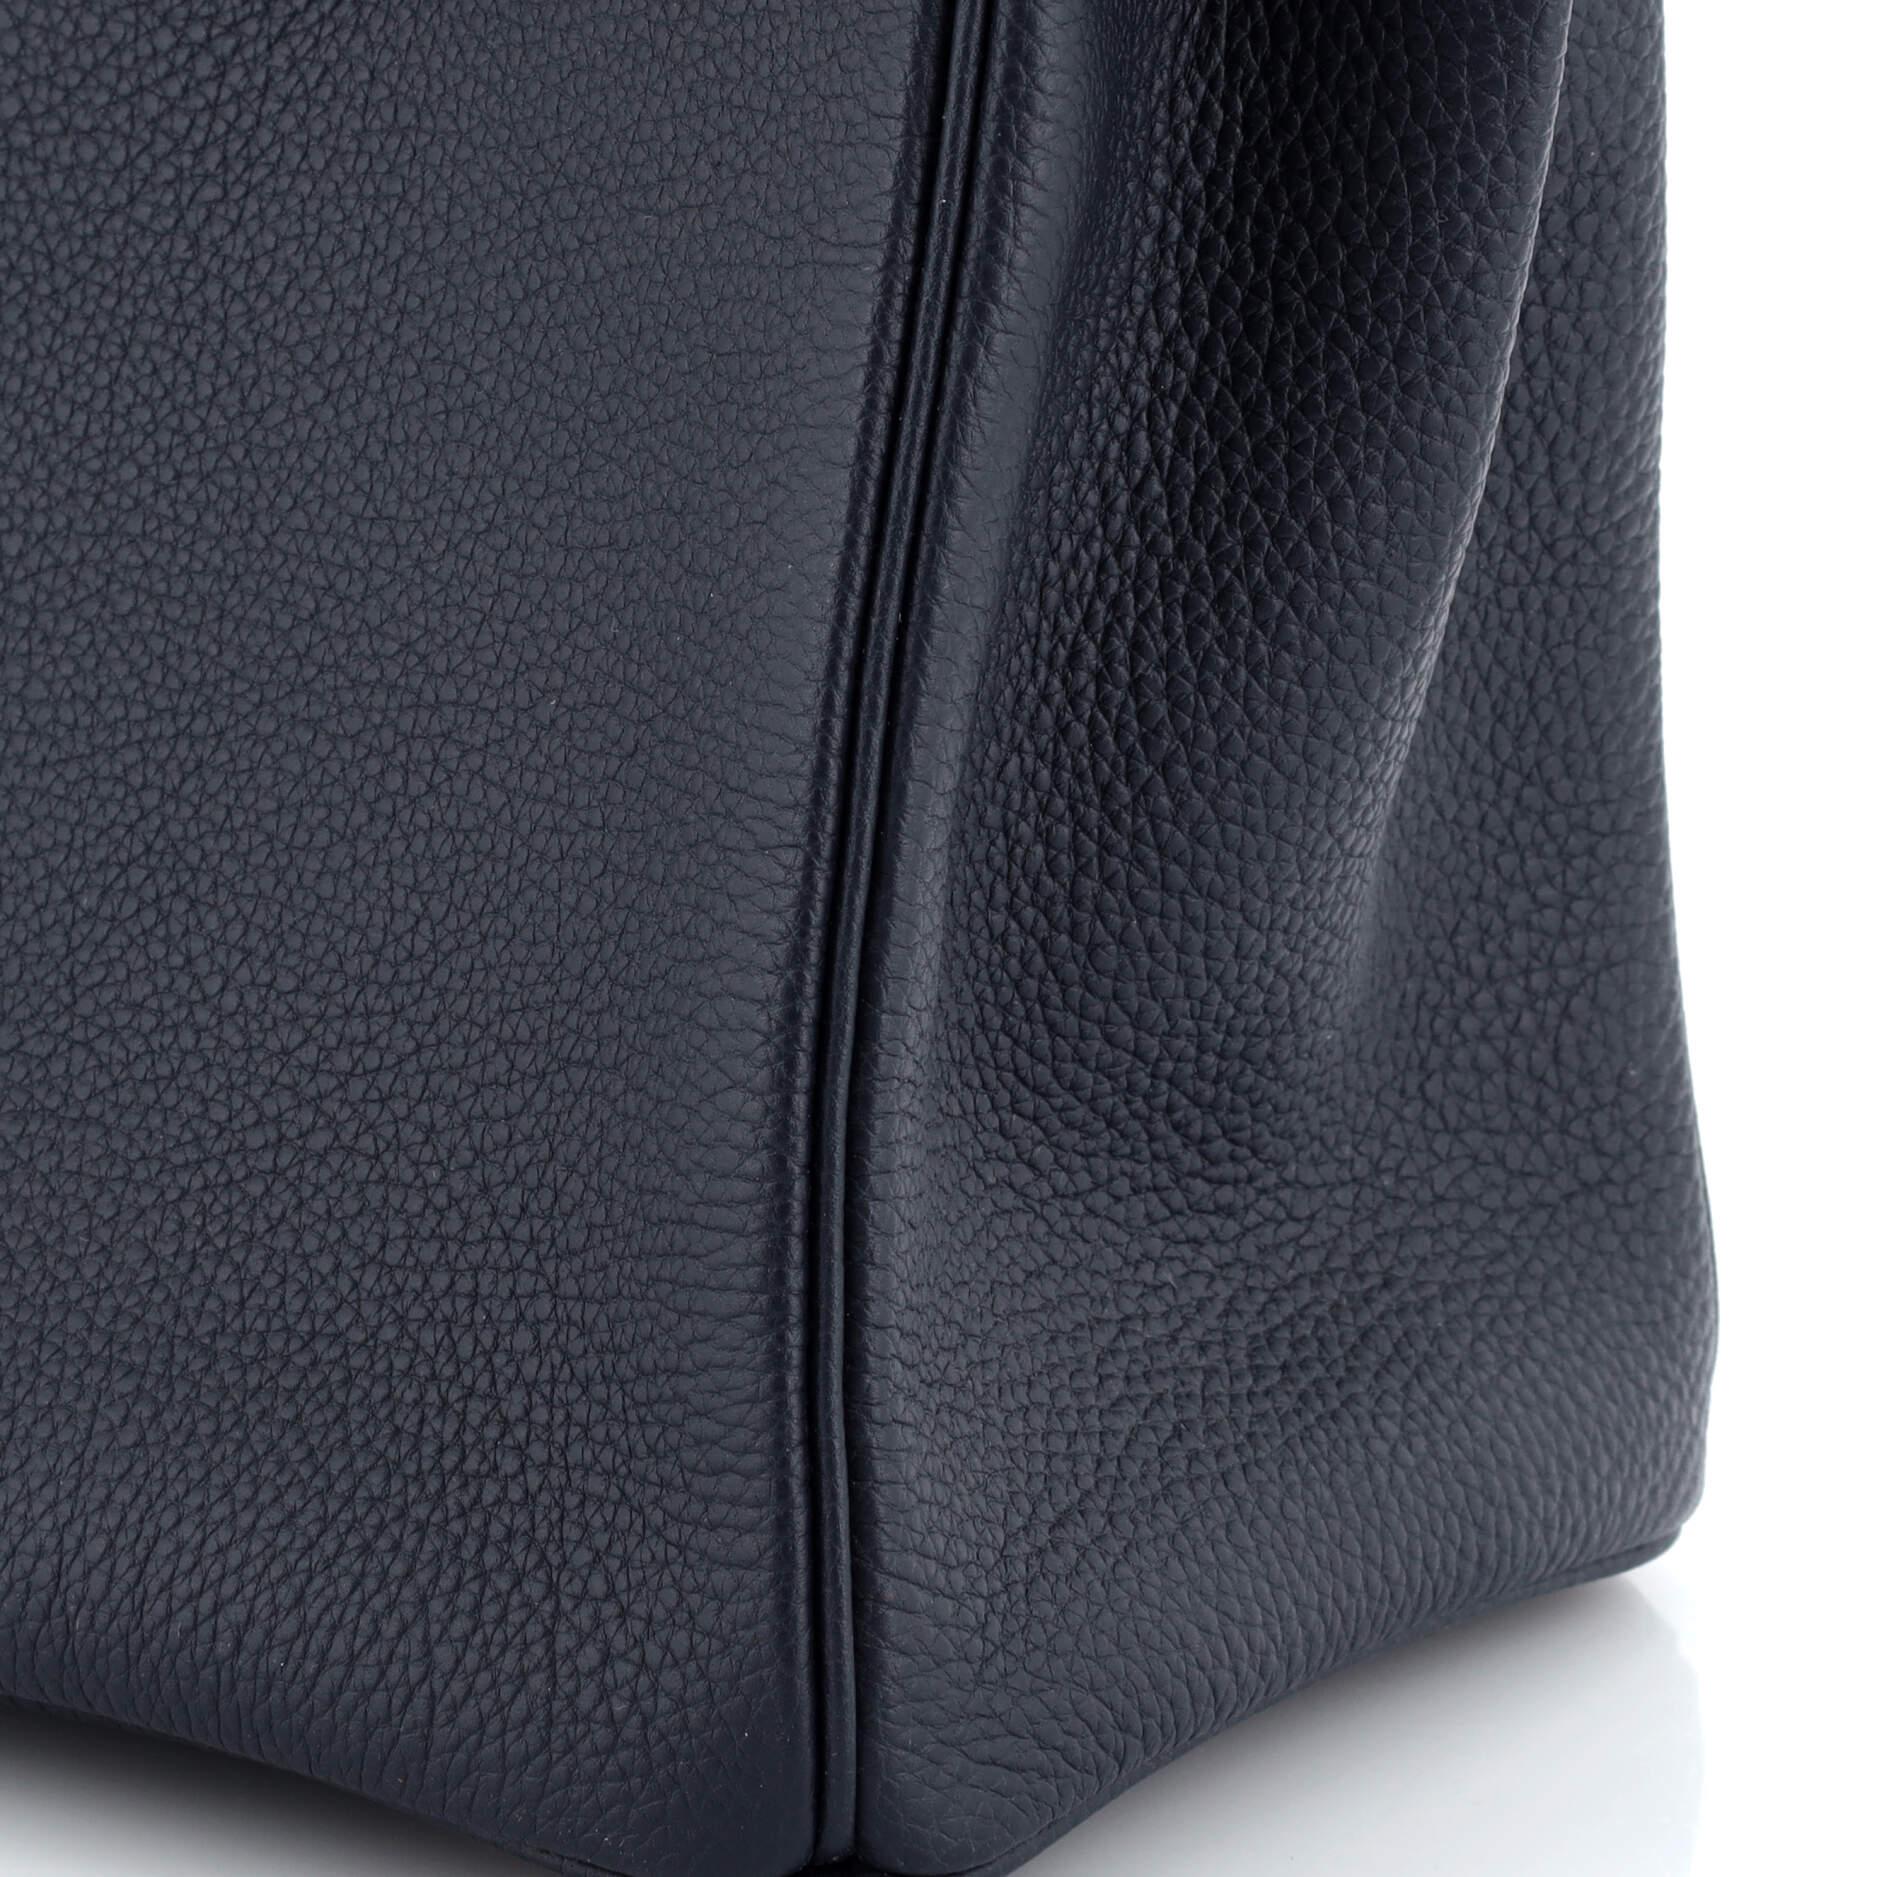 Hermes Birkin Handbag Bleu Nuit Togo with Rose Gold Hardware 30 5